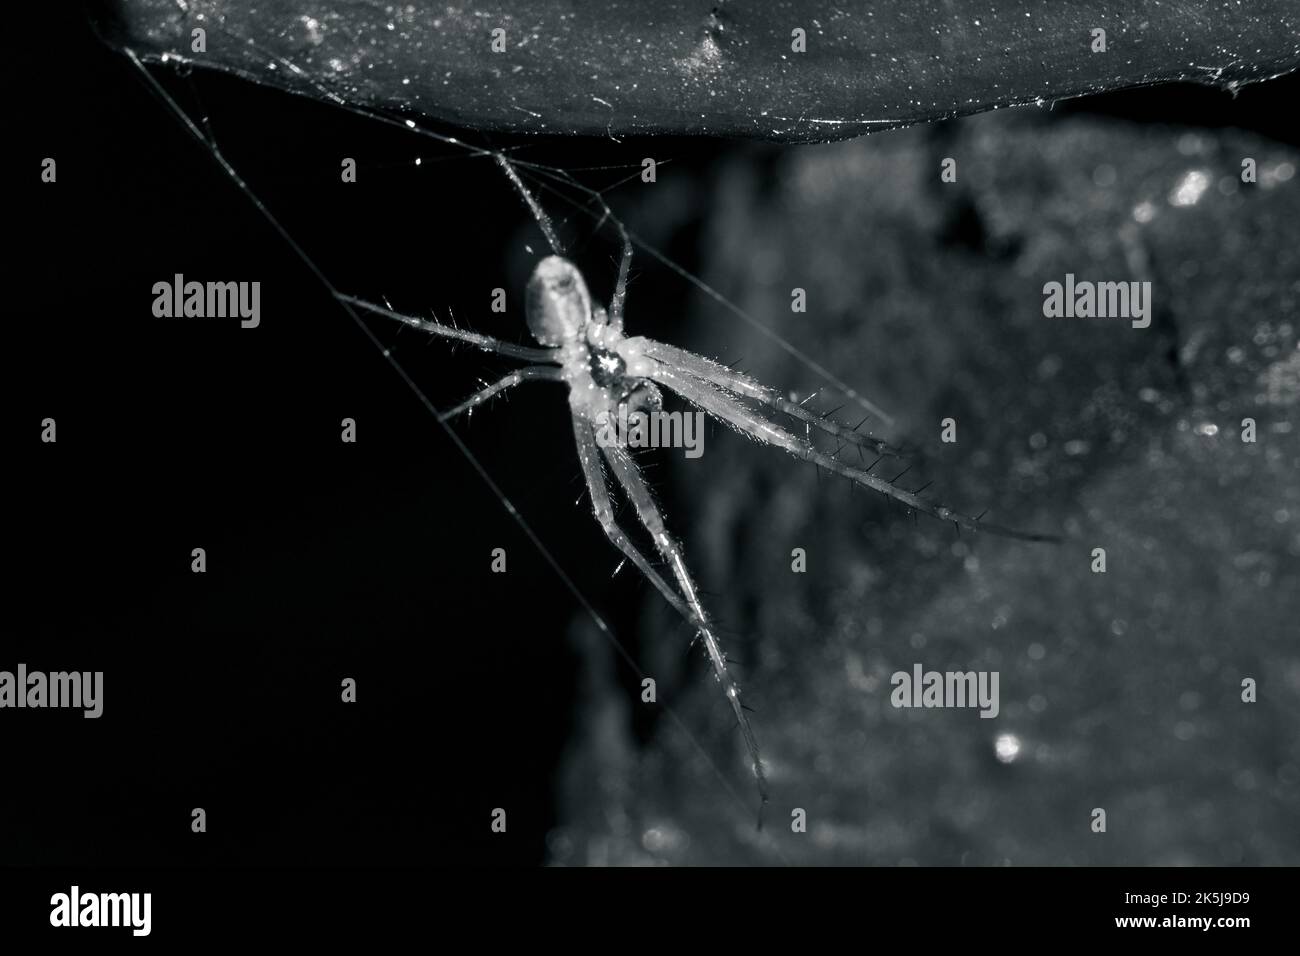 Mise au point sélective en niveaux de gris d'une araignée cousant une toile Banque D'Images